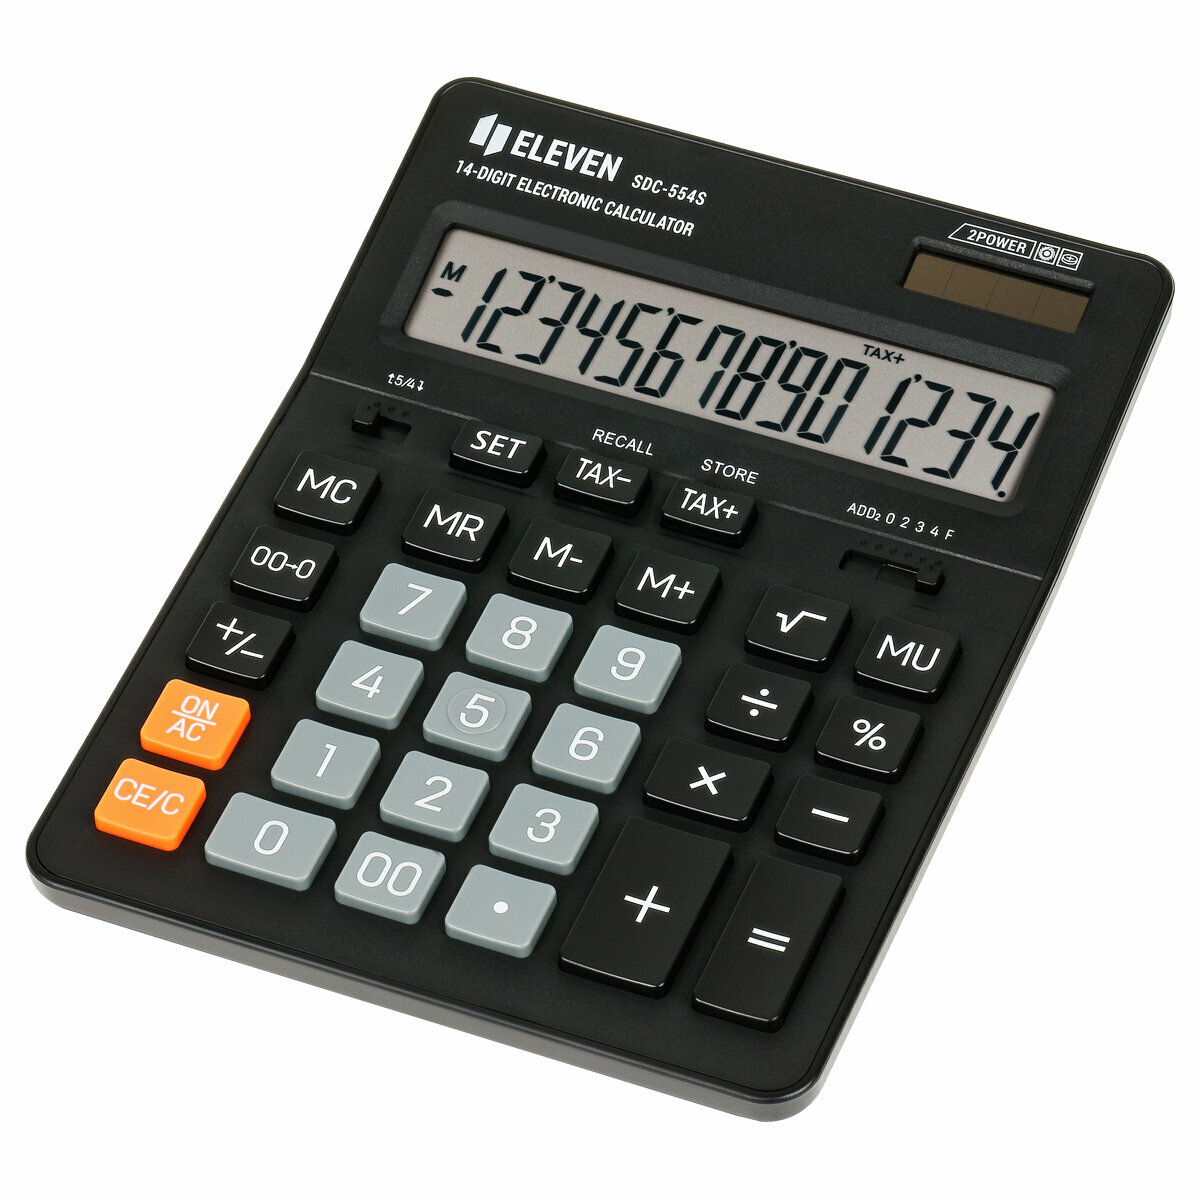 Комплект 2 шт Калькулятор настольный Eleven SDC-554S 14 разрядов двойное питание 155*205*36мм черный